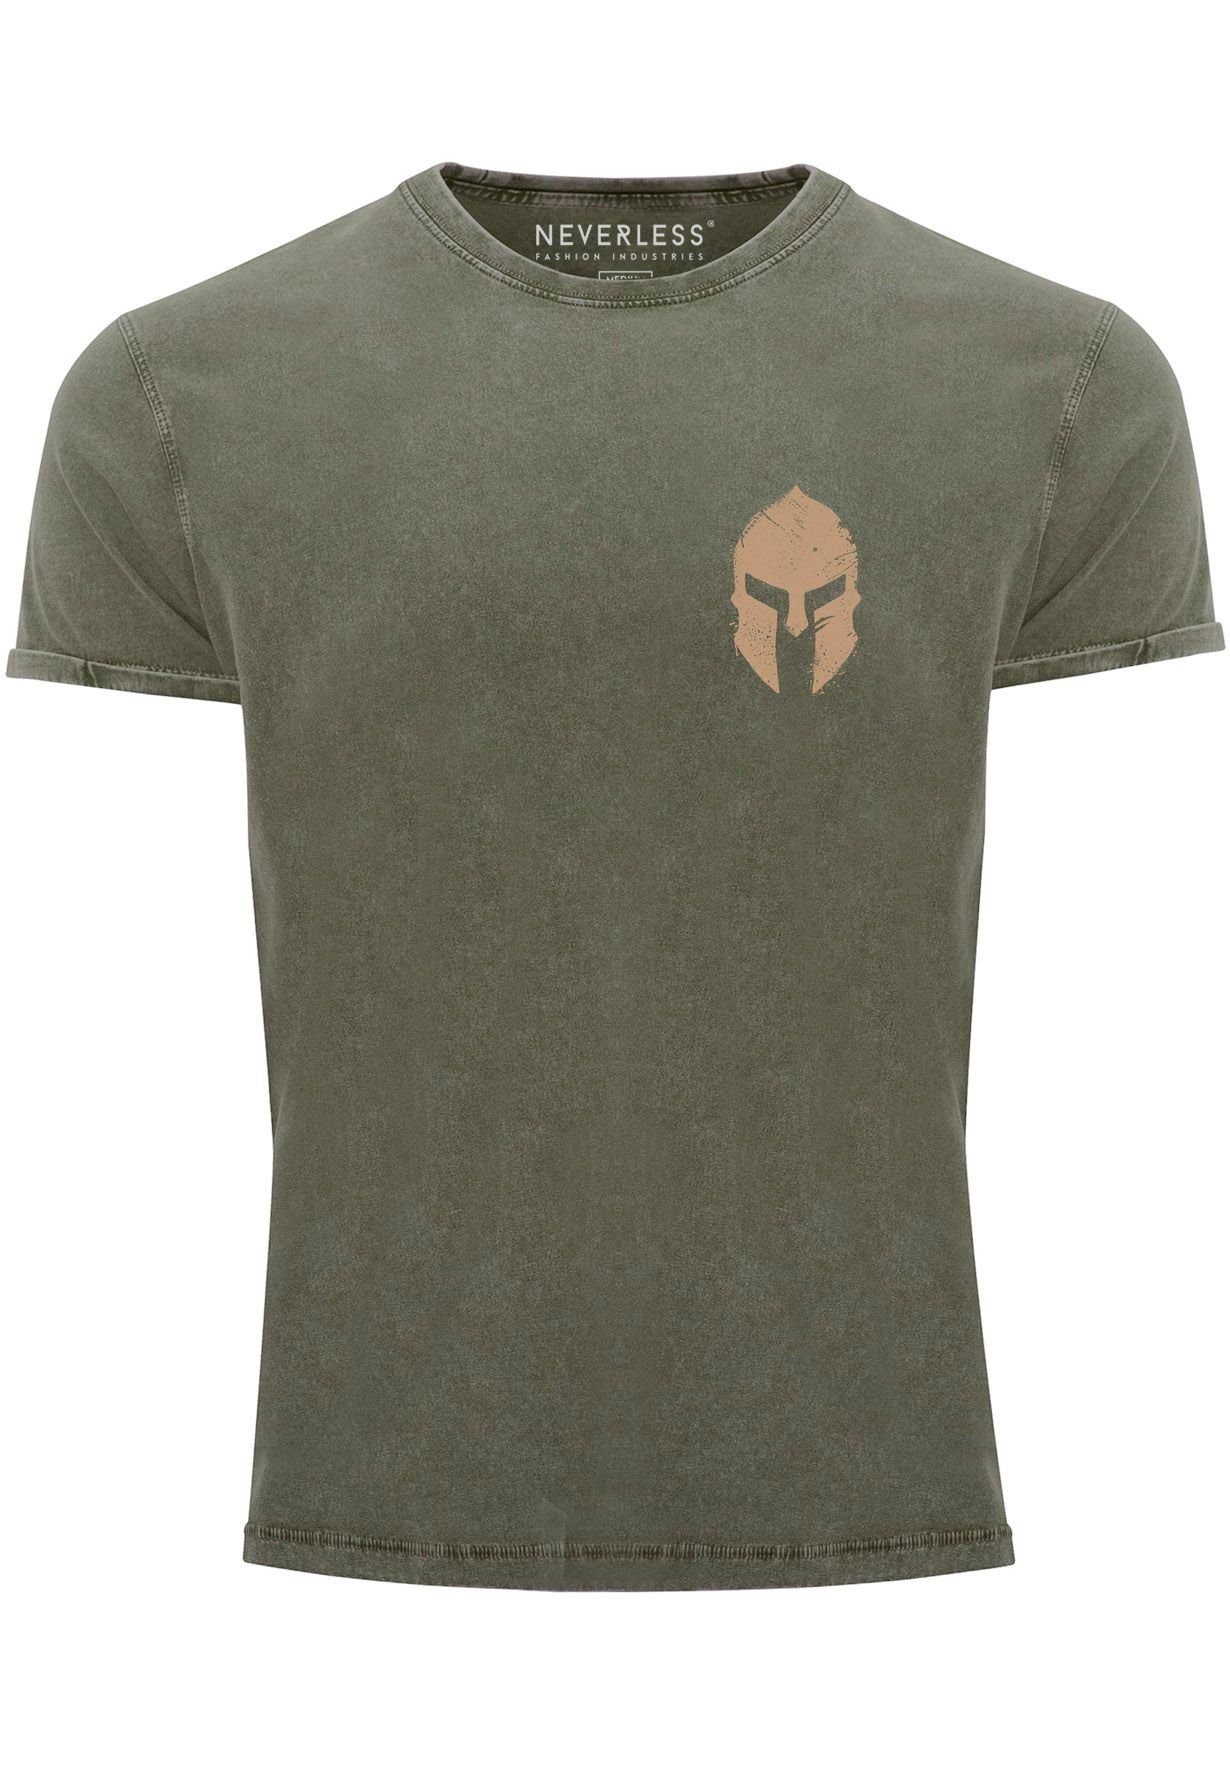 Neverless Print-Shirt Herren Kriege Logo Vintage Gladiator oliv Print mit Sparta-Helm Print Spartaner Shirt